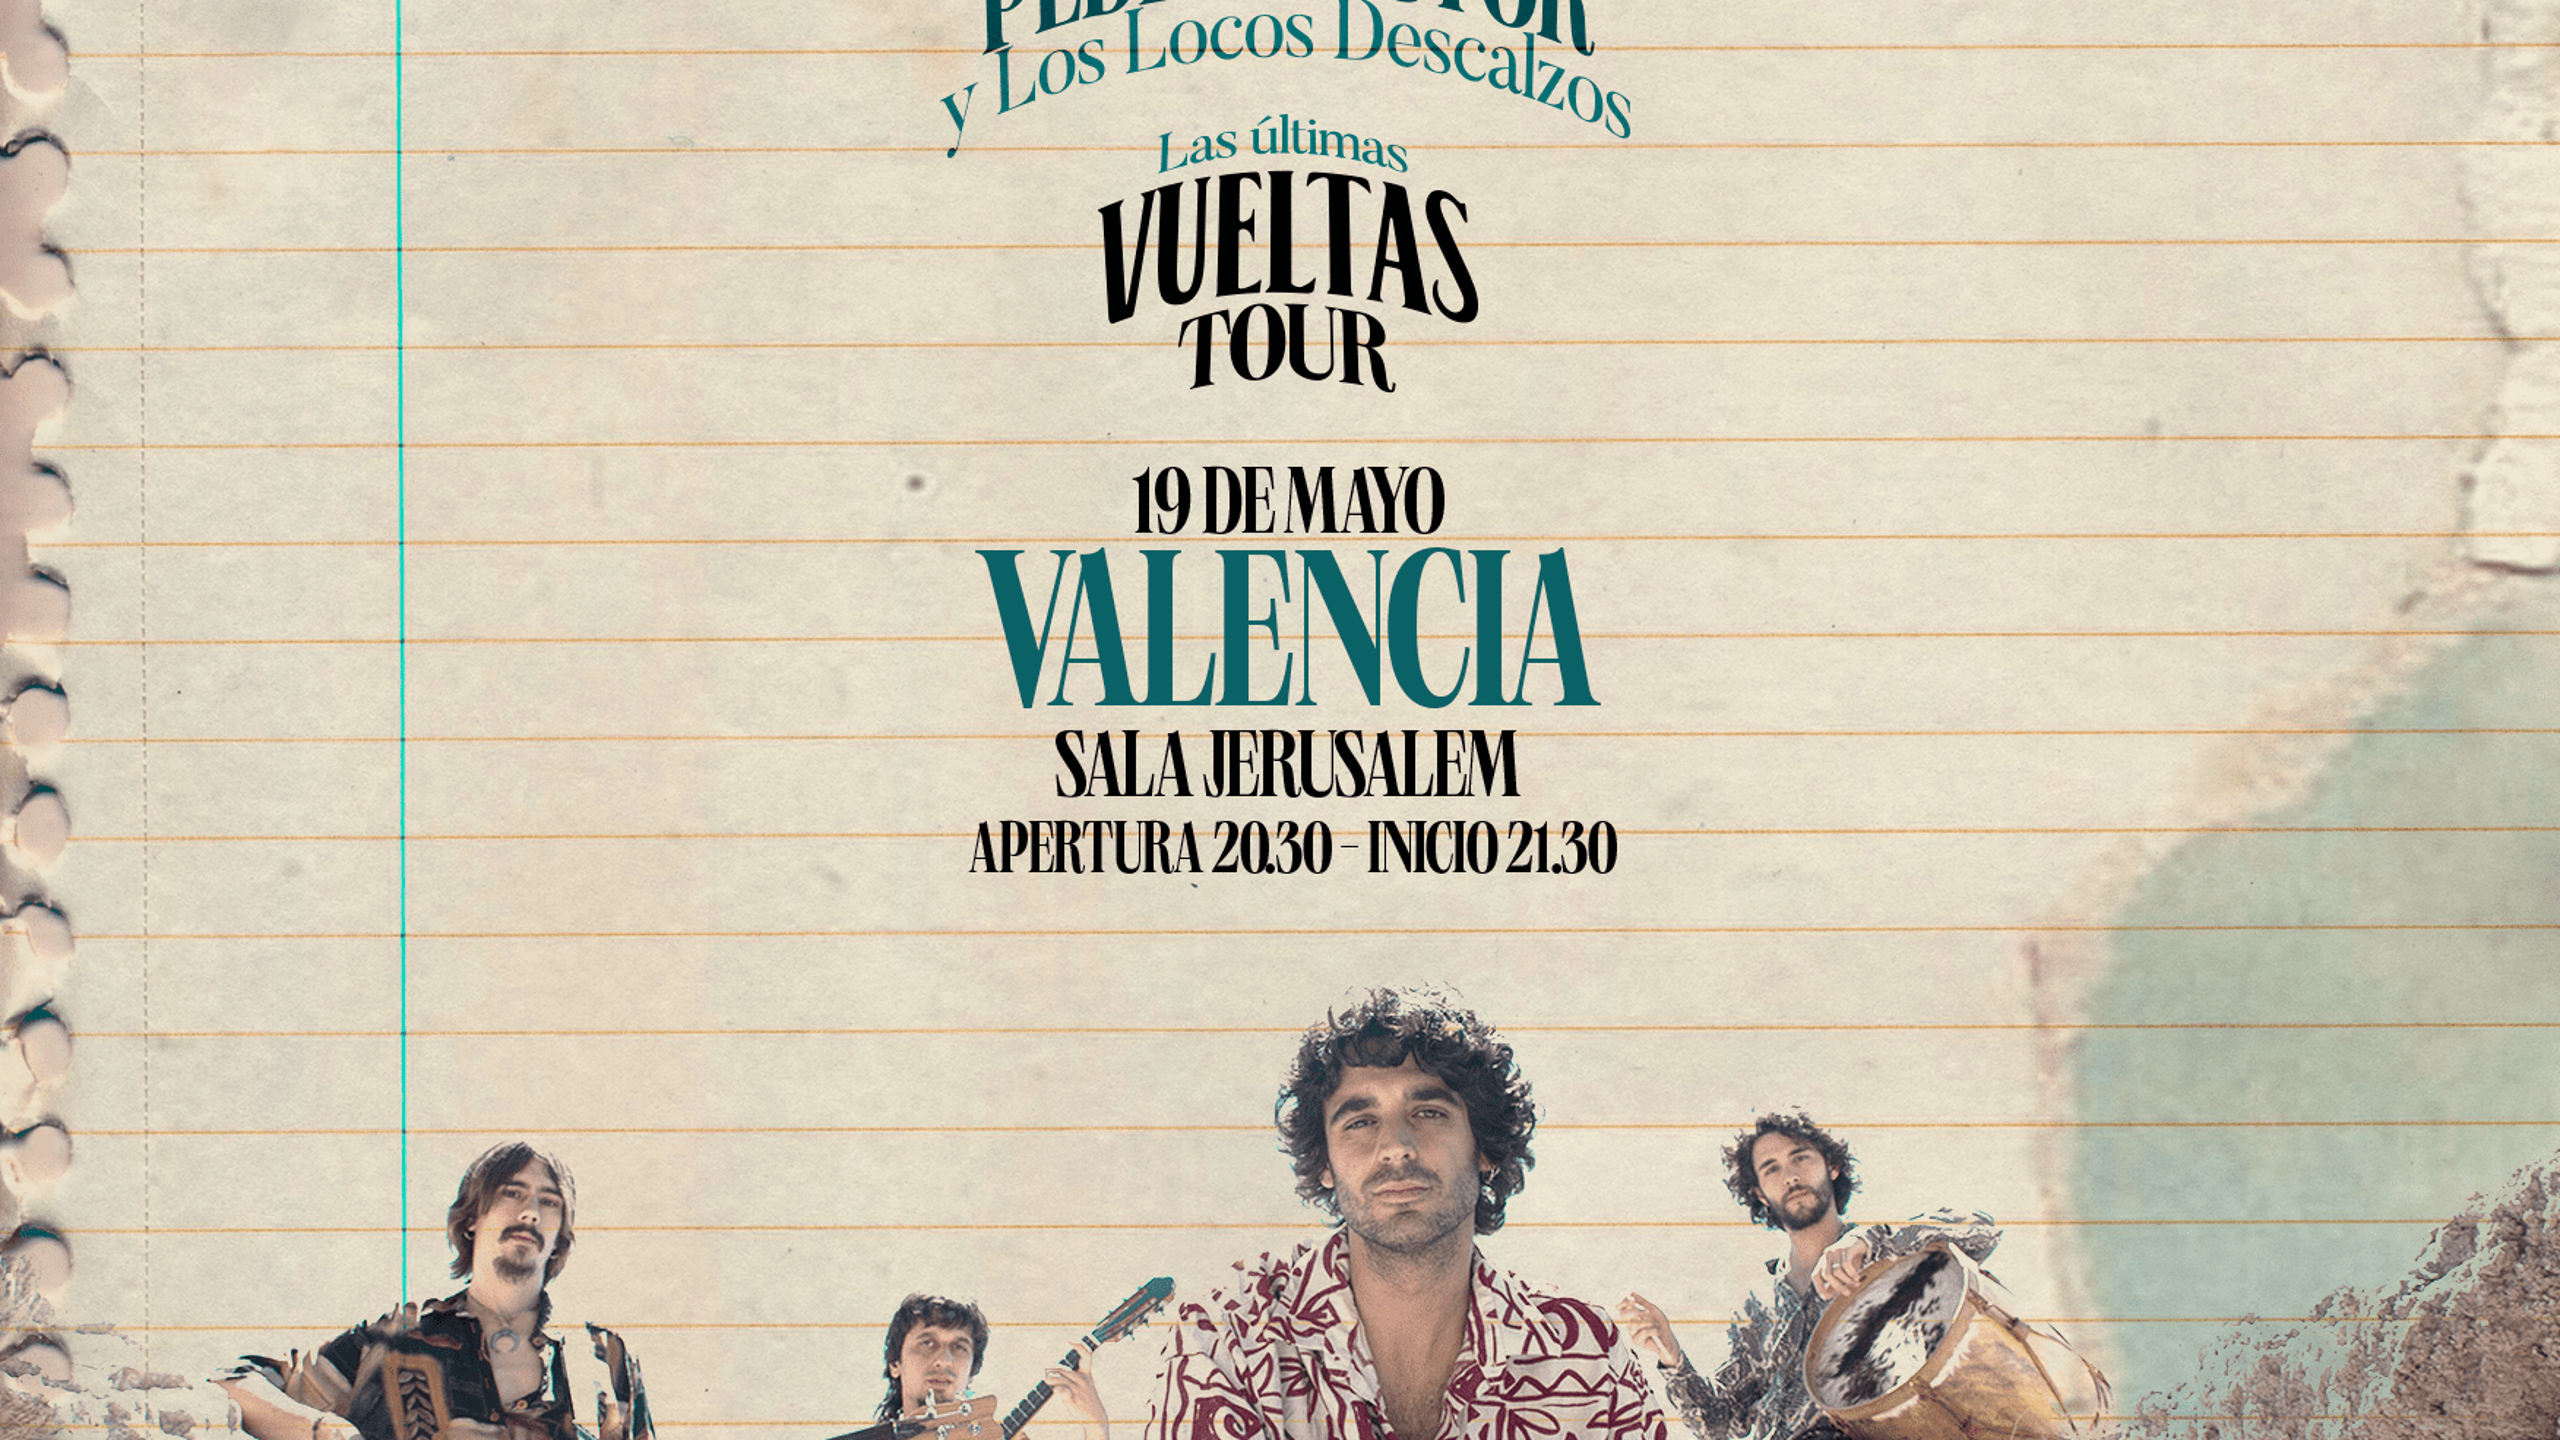 Fotografía promocional de Pedro Pastor Valencia ''Las Últimas Vueltas'' Tour